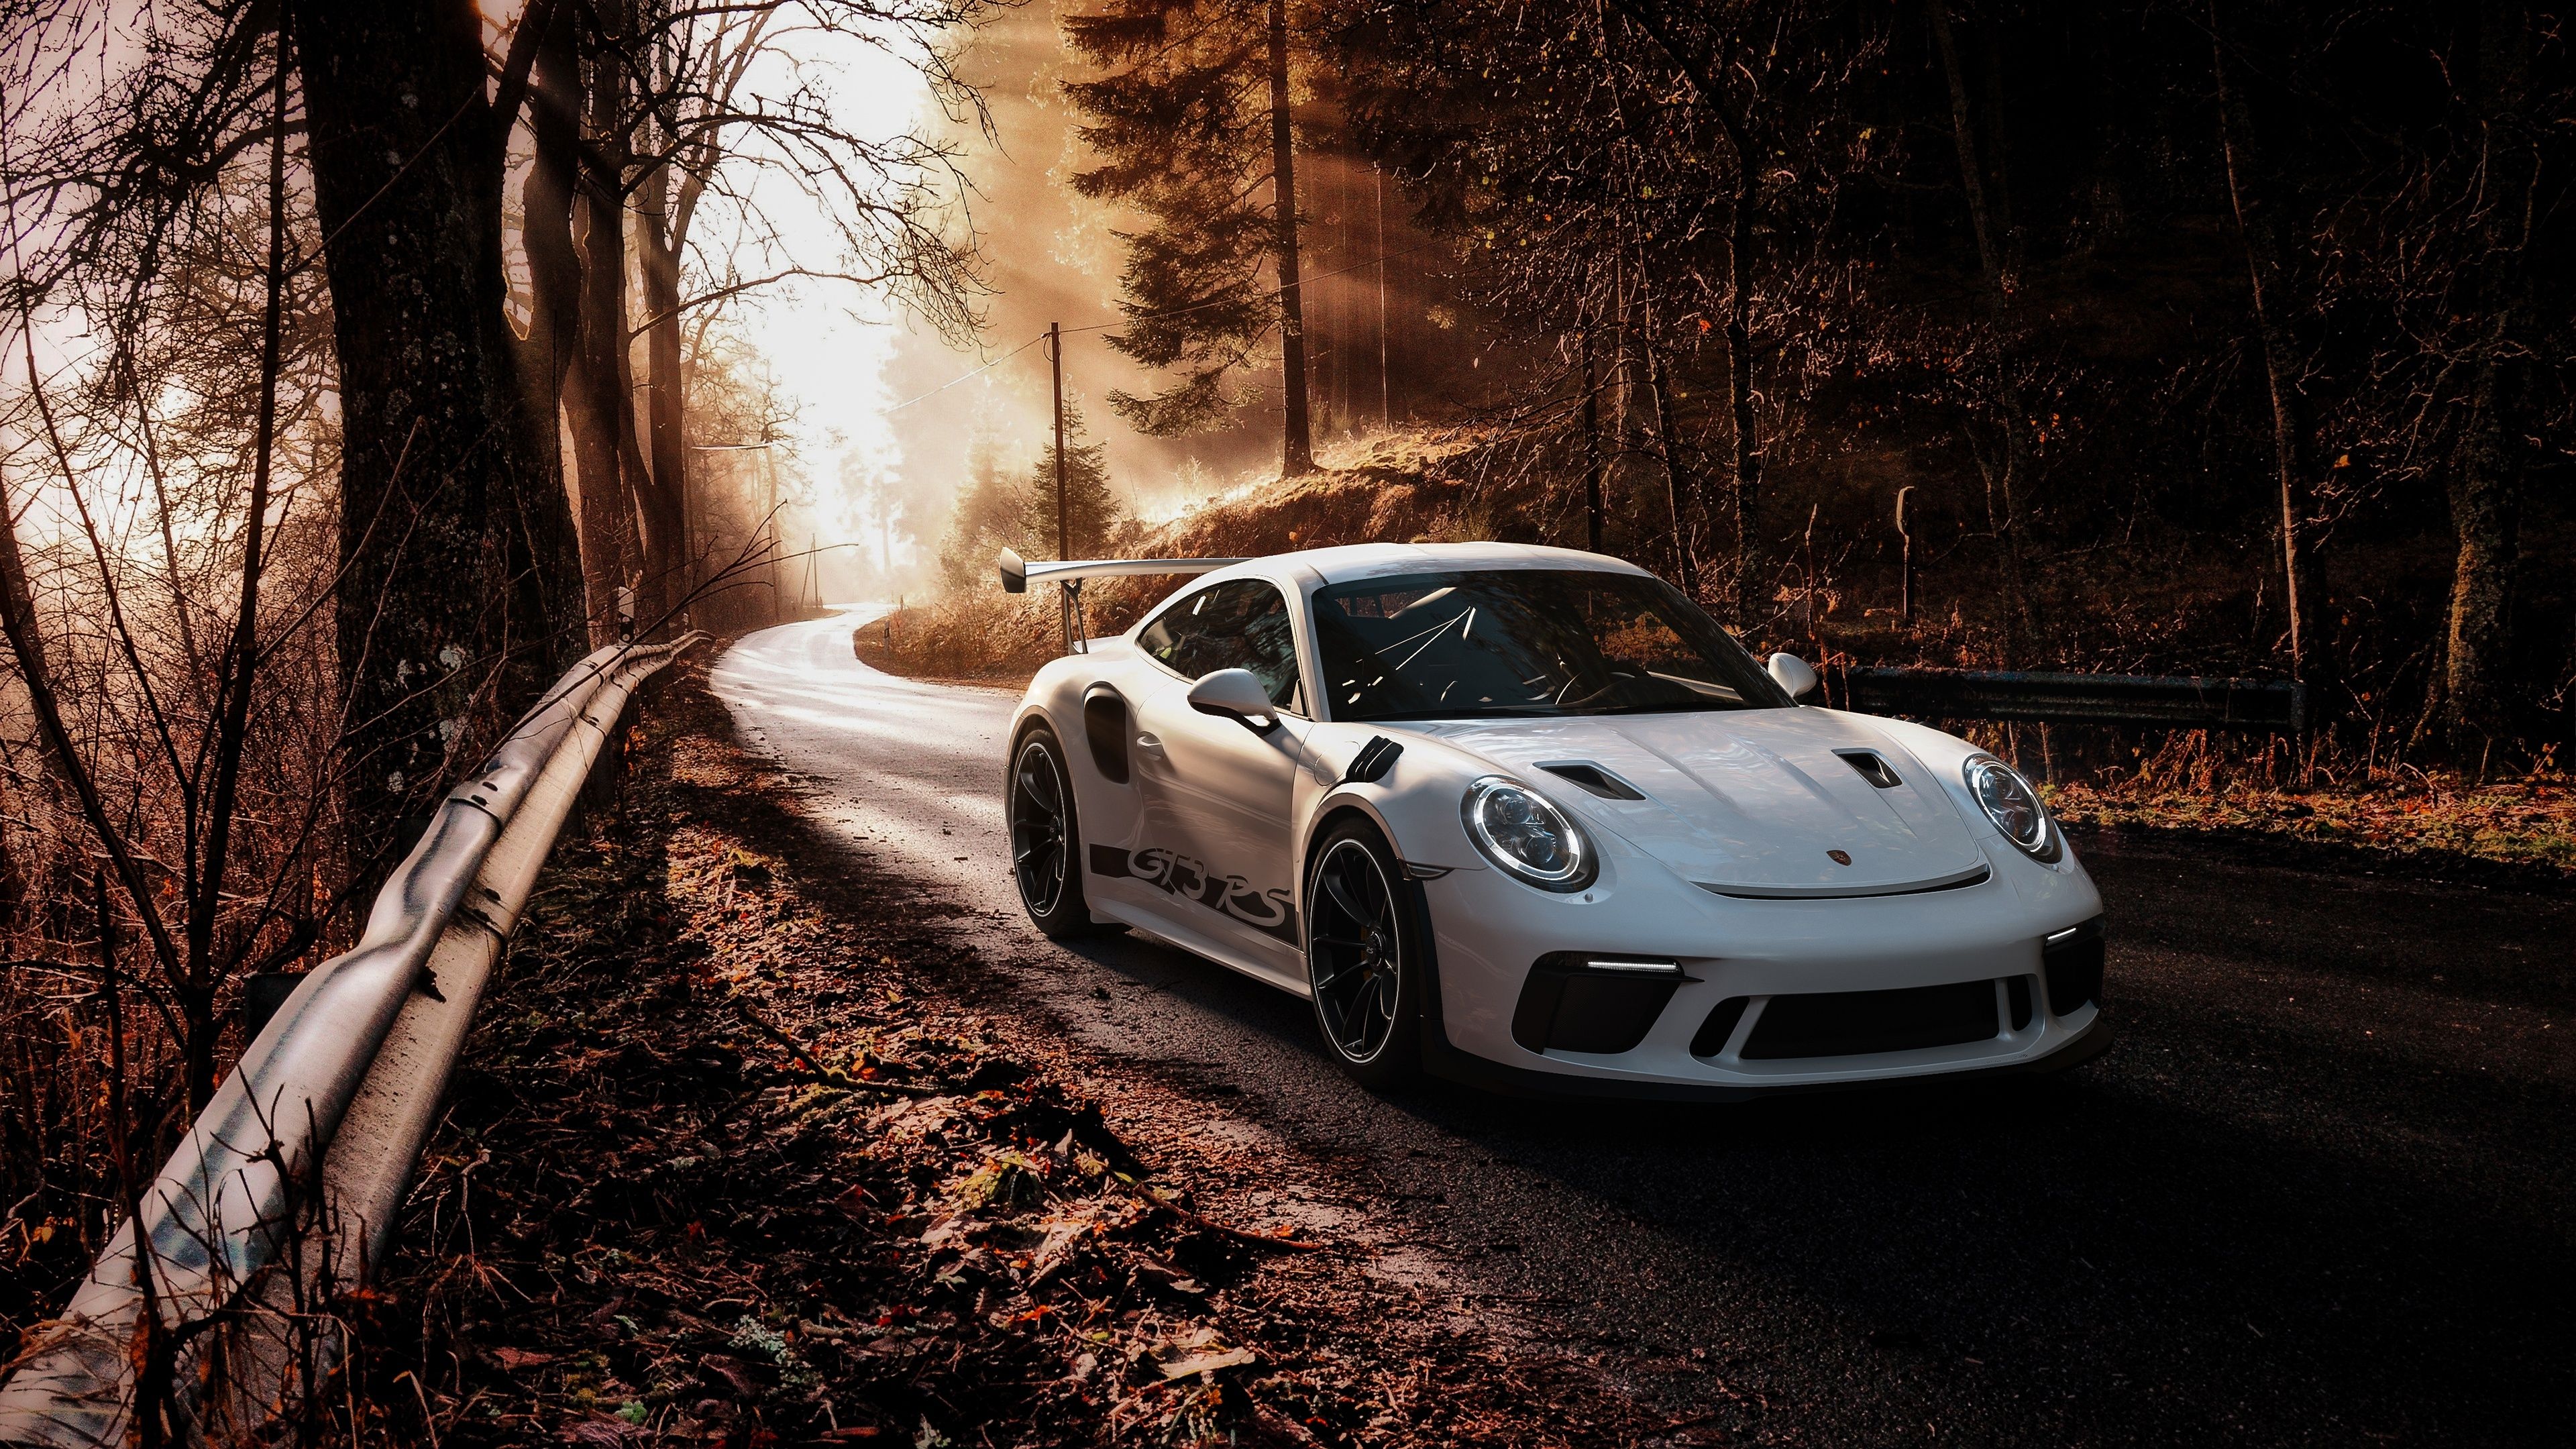  Porsche Gt3 Rs Hintergrundbild 3840x2160. Porsche 911 GT3 RS HD Wallpaper and Background